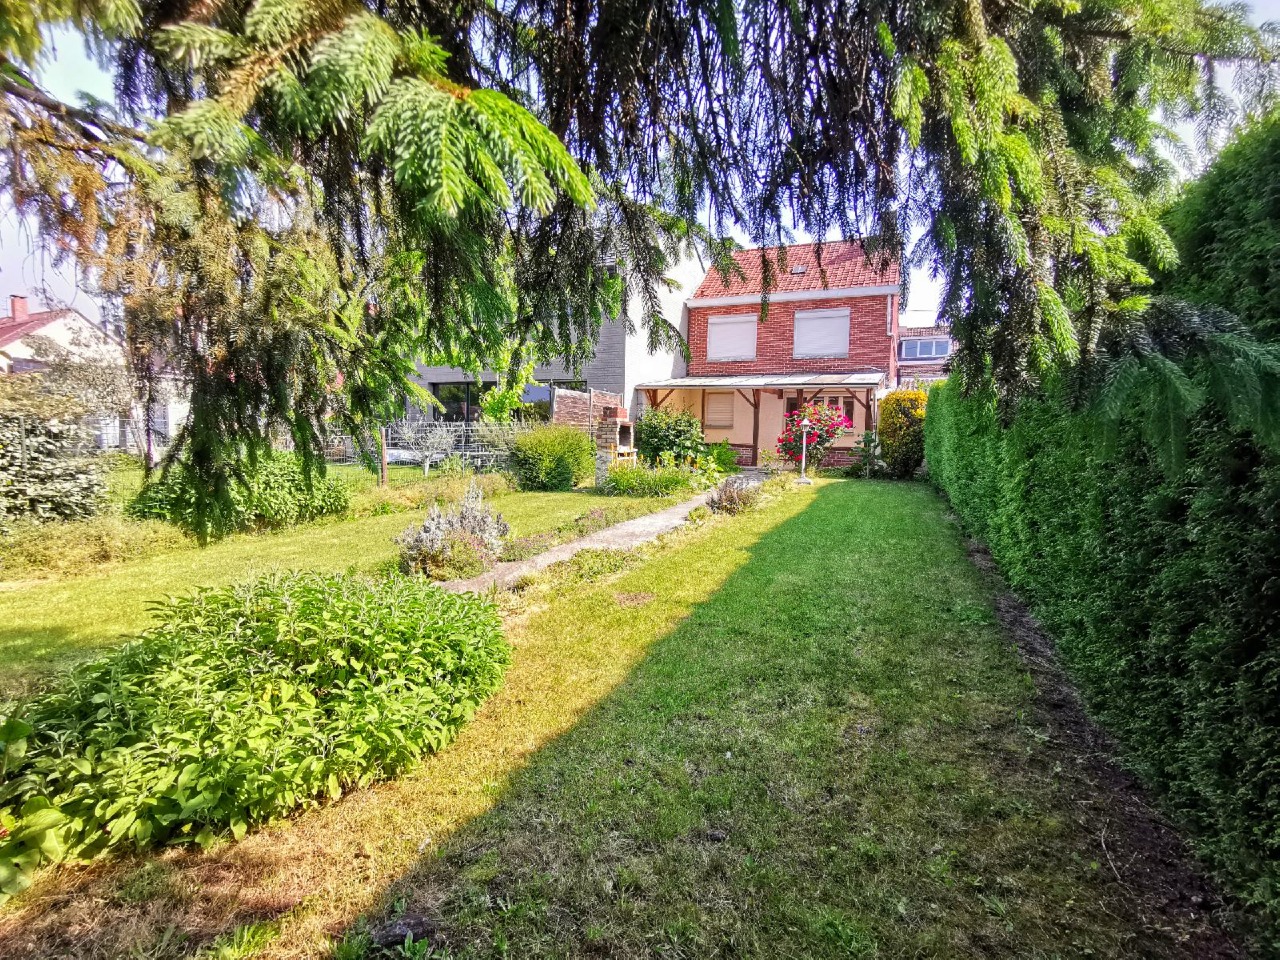 Maison semi individuelle avec jardin et garage